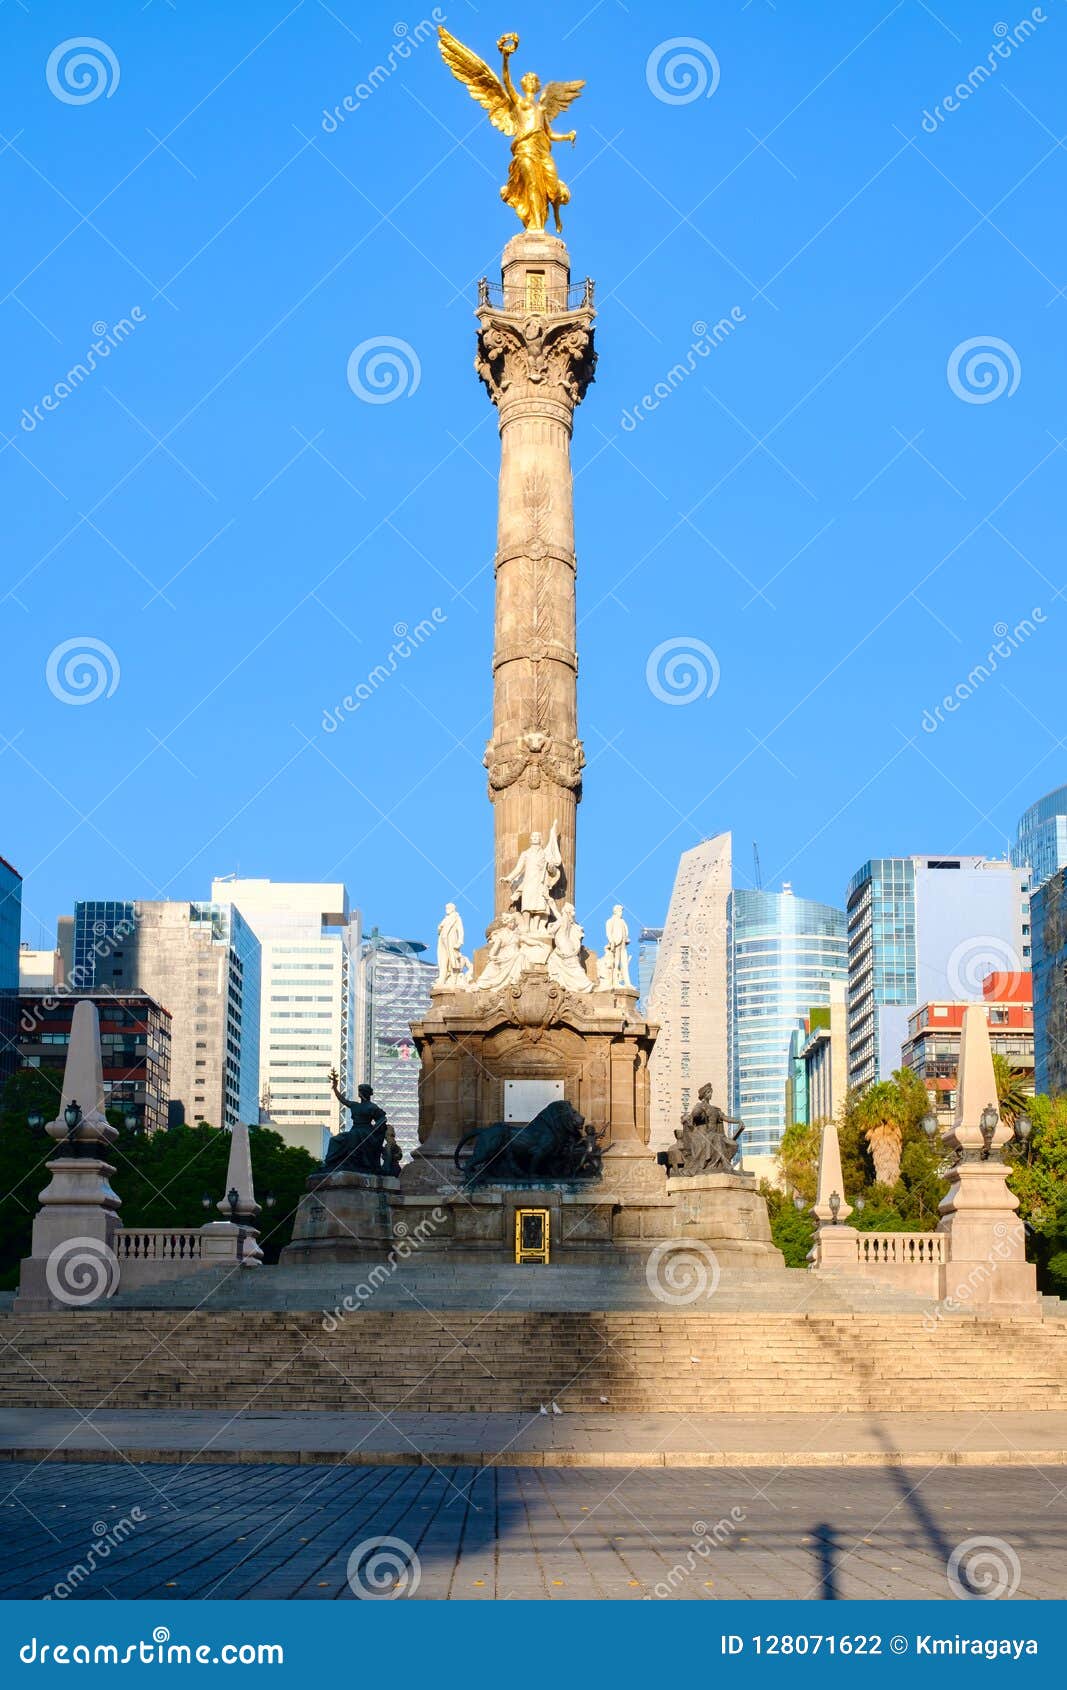 Ο άγγελος της ανεξαρτησίας, ένα σύμβολο της Πόλης του Μεξικού. Ο άγγελος της ανεξαρτησίας, ένα παγκόσμιο γνωστό σύμβολο της Πόλης του Μεξικού